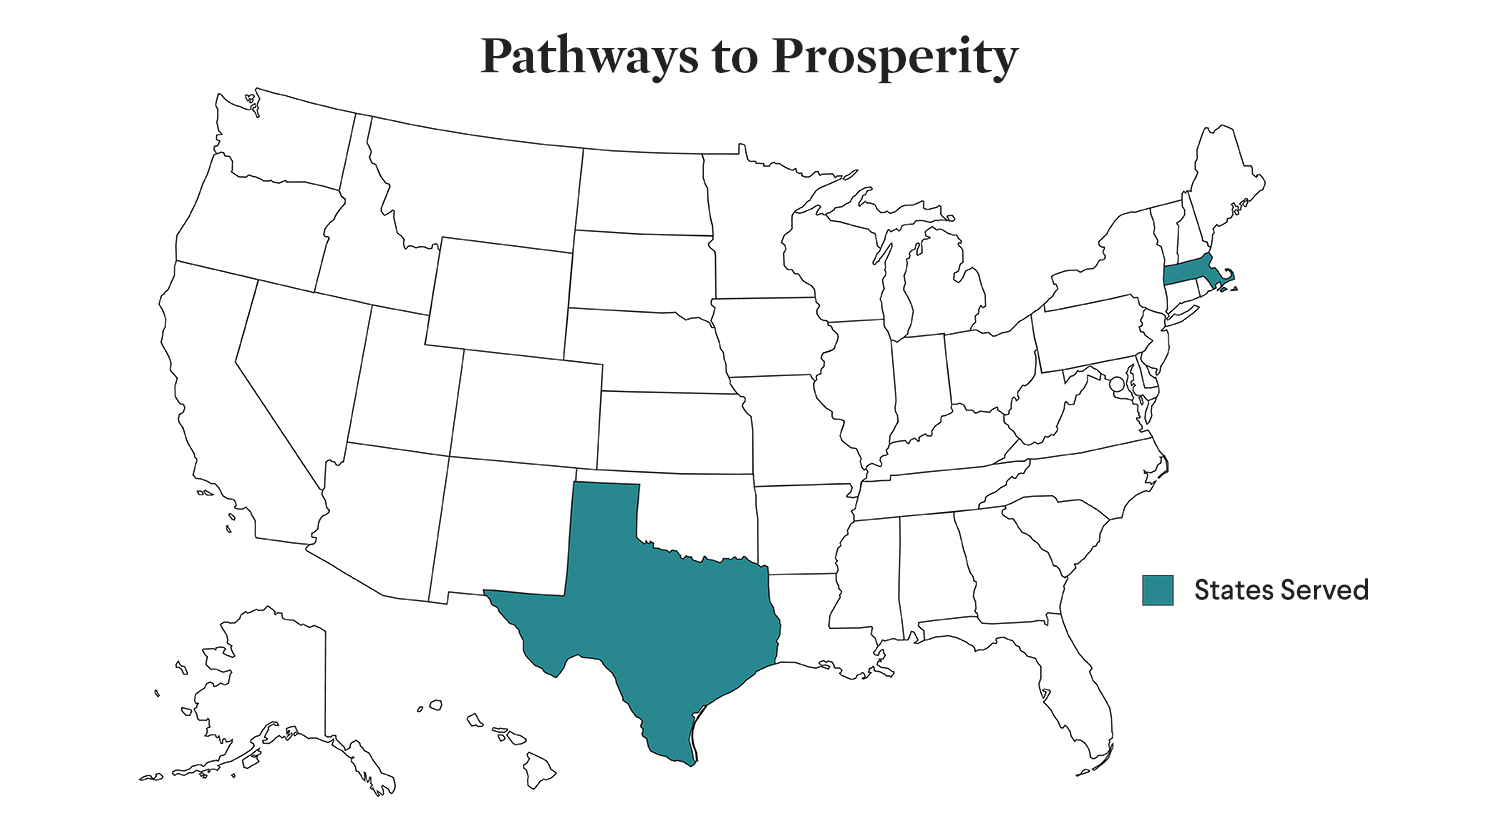 5 Pathways to Prosperity